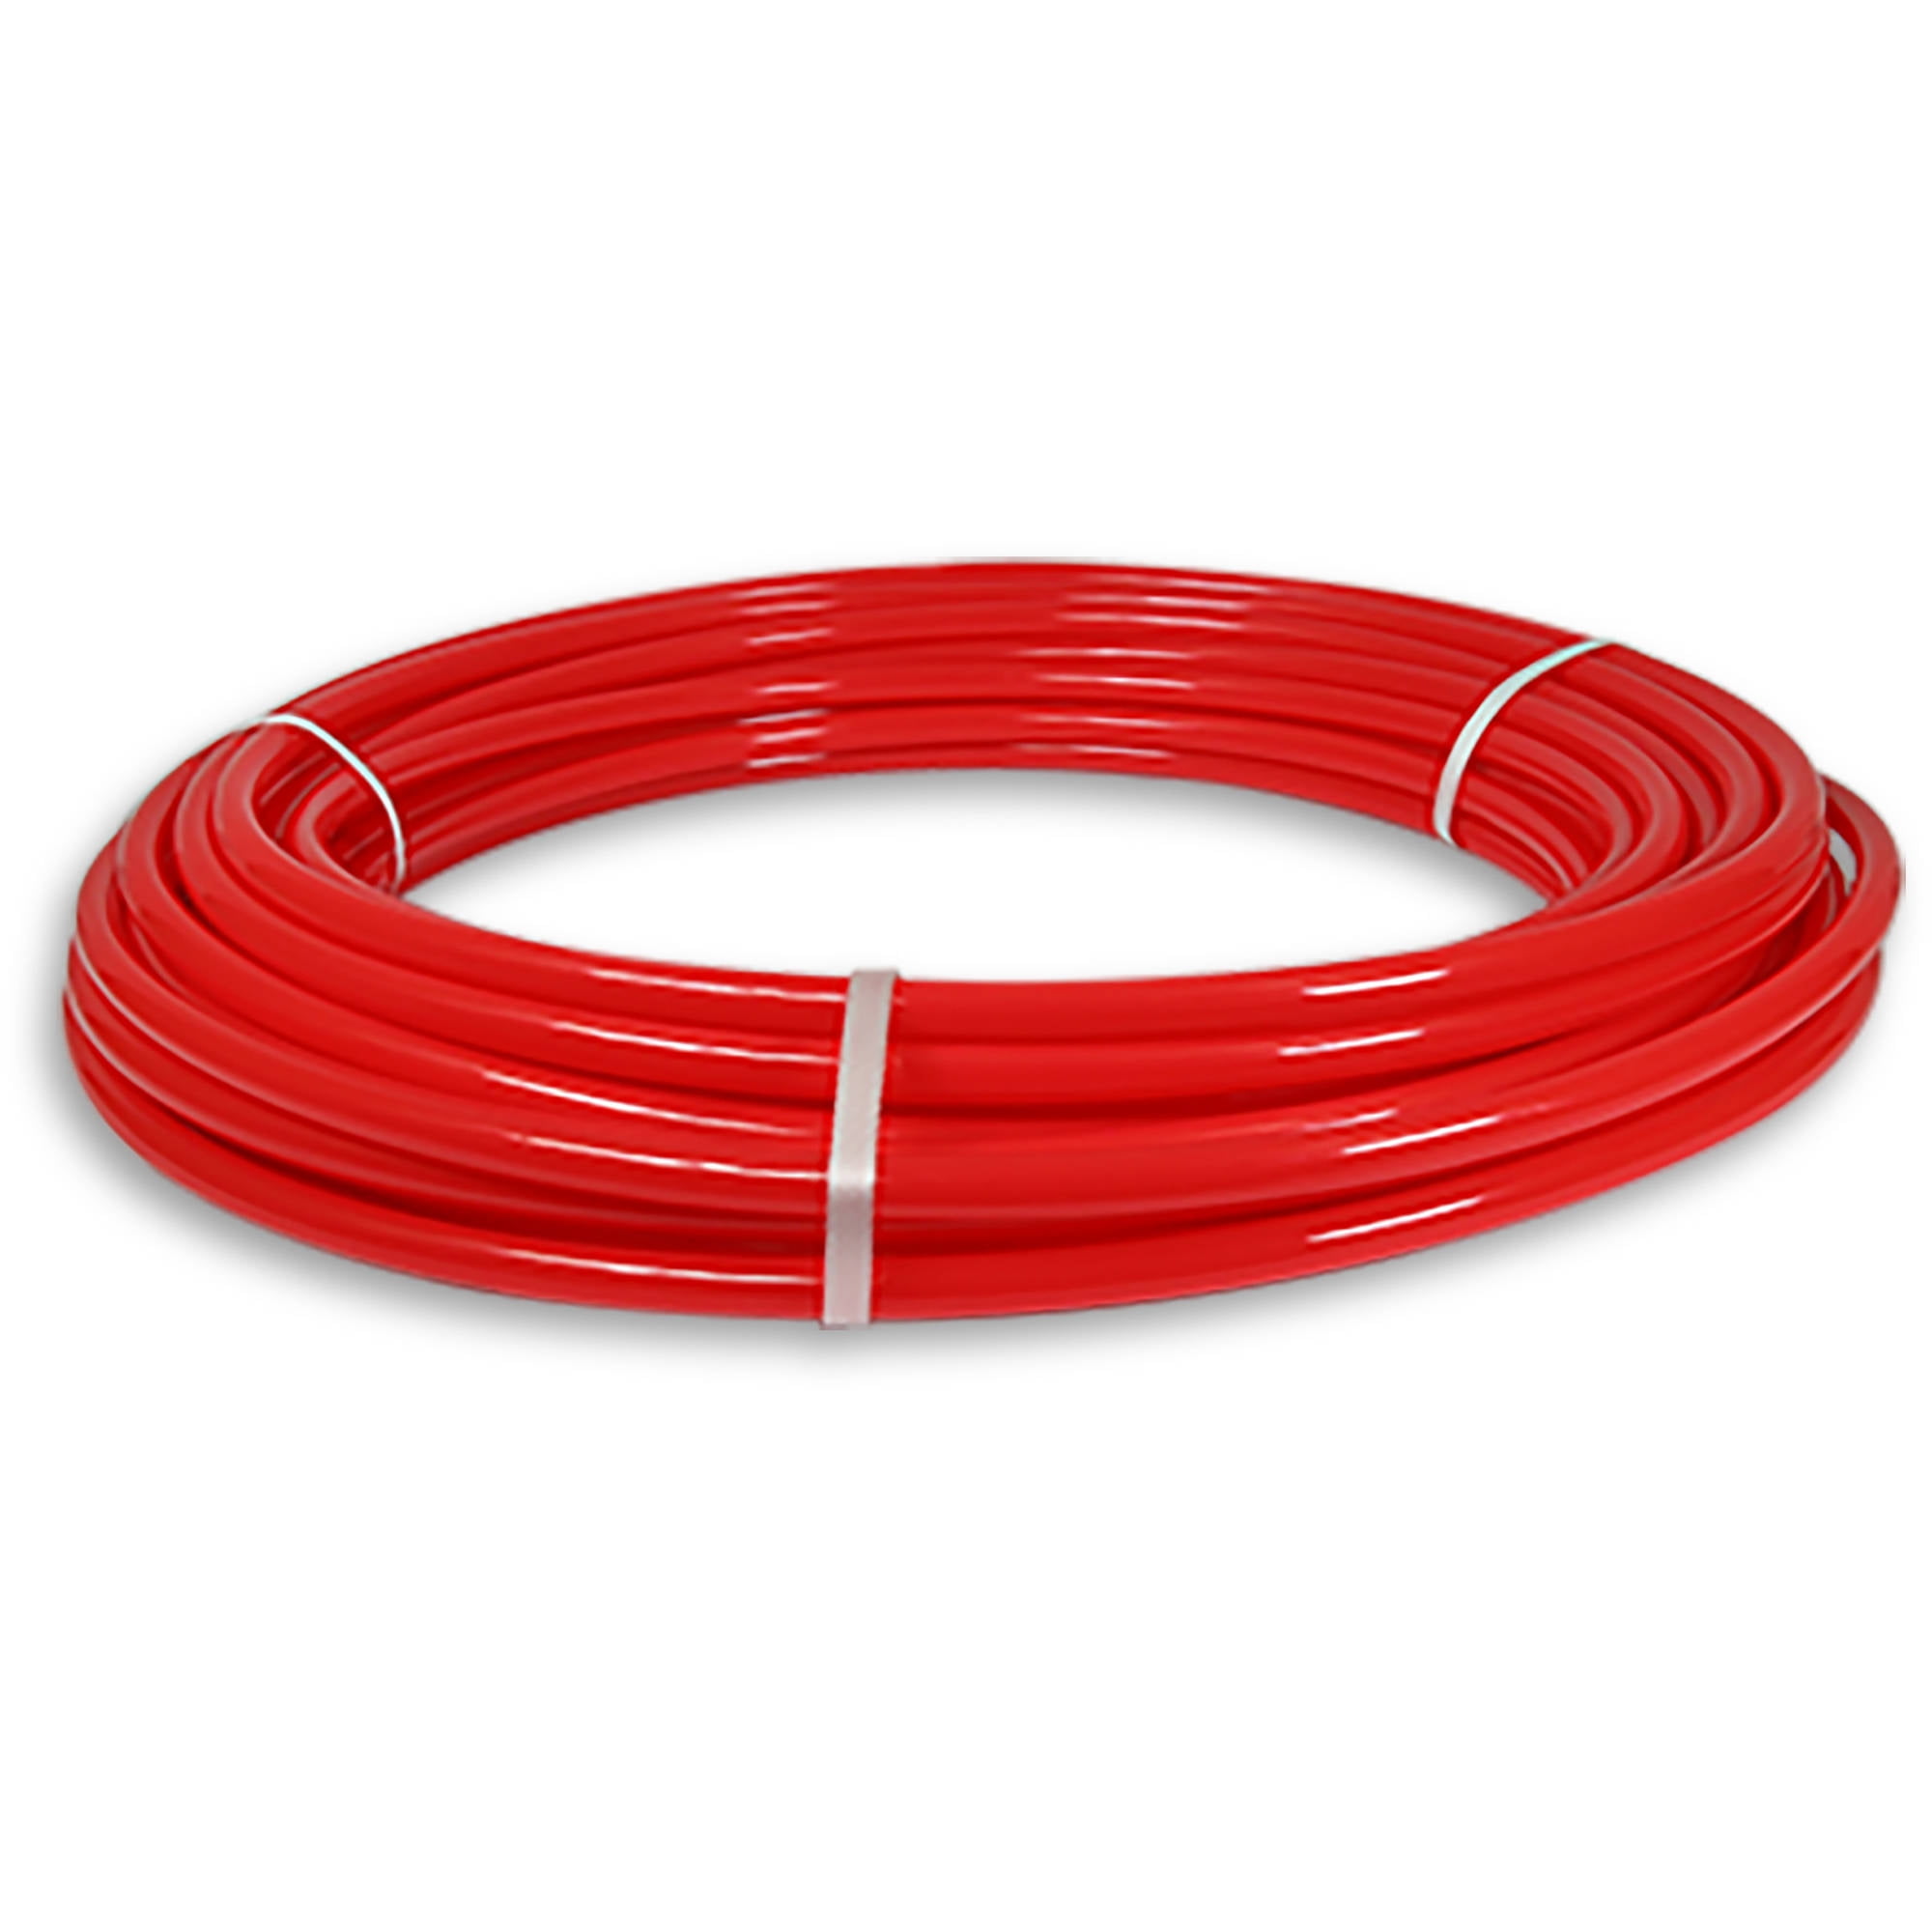 Red Pexflow PFR-R34100 Oxygen Barrier PEX Tubing 3/4 Inch x 100 Feet 